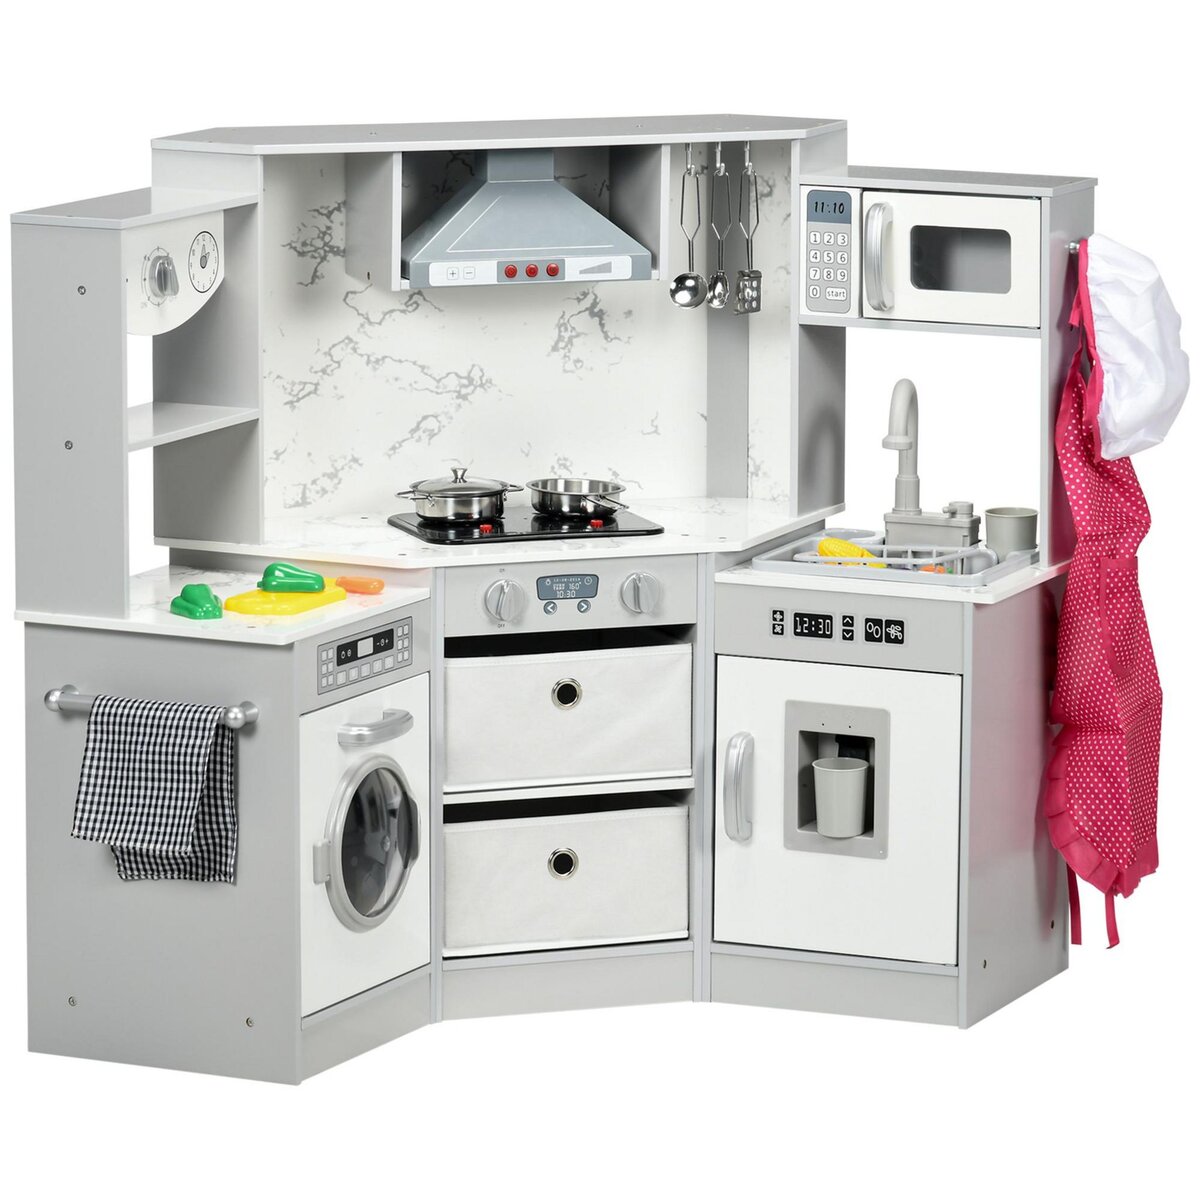 HOMCOM Cuisine pour enfant jeu d'imitation nombreux accessoires rangements  évier réfrigérateur hotte lave-linge gris blanc pas cher 